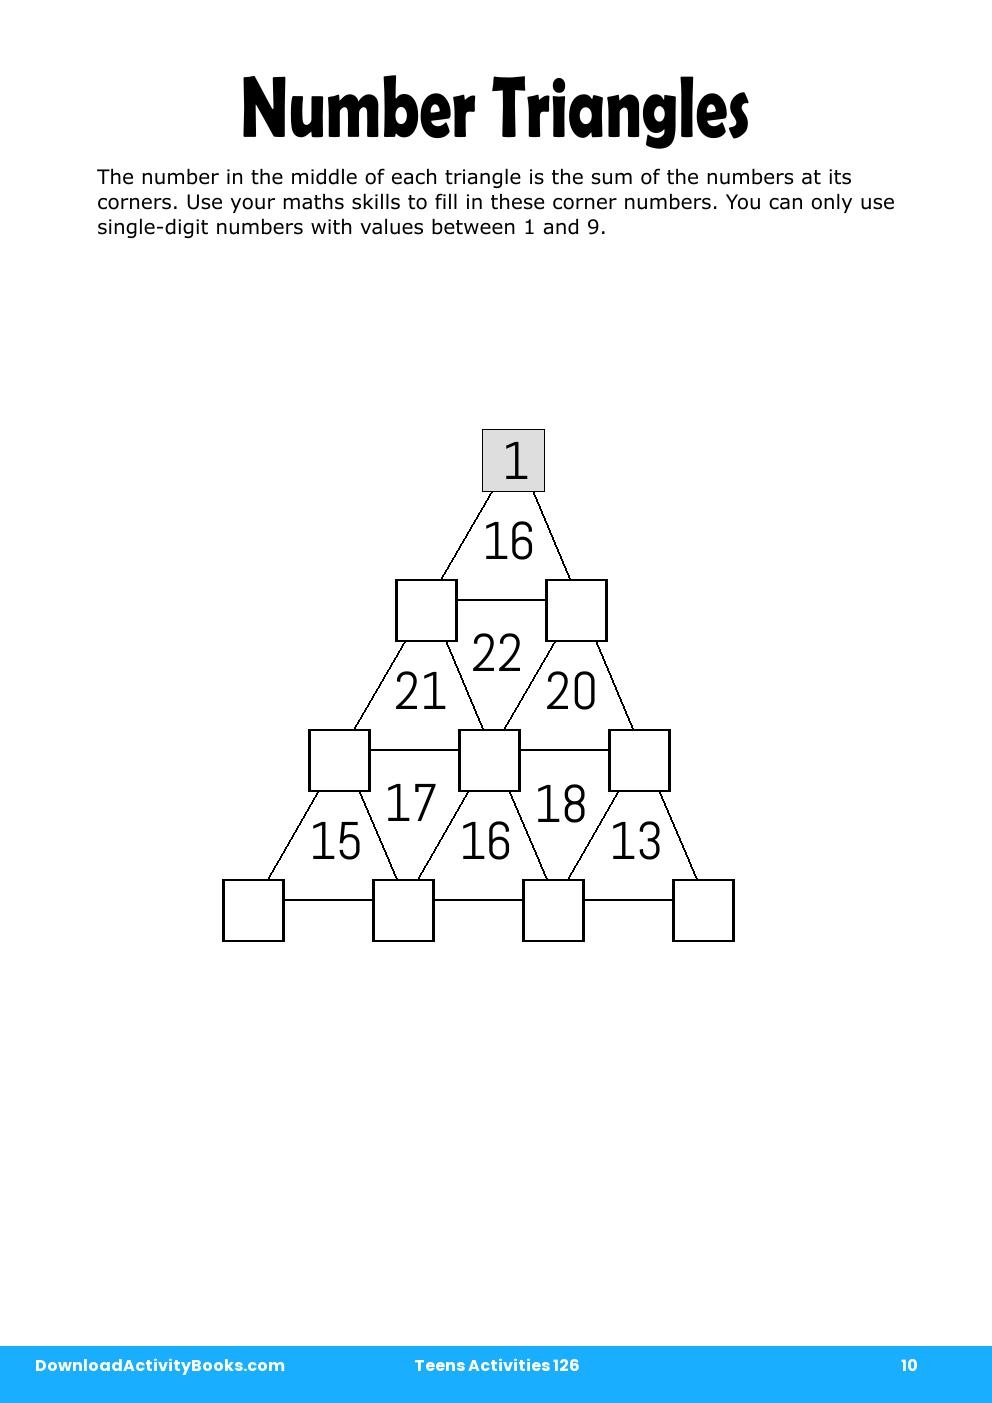 Number Triangles in Teens Activities 126